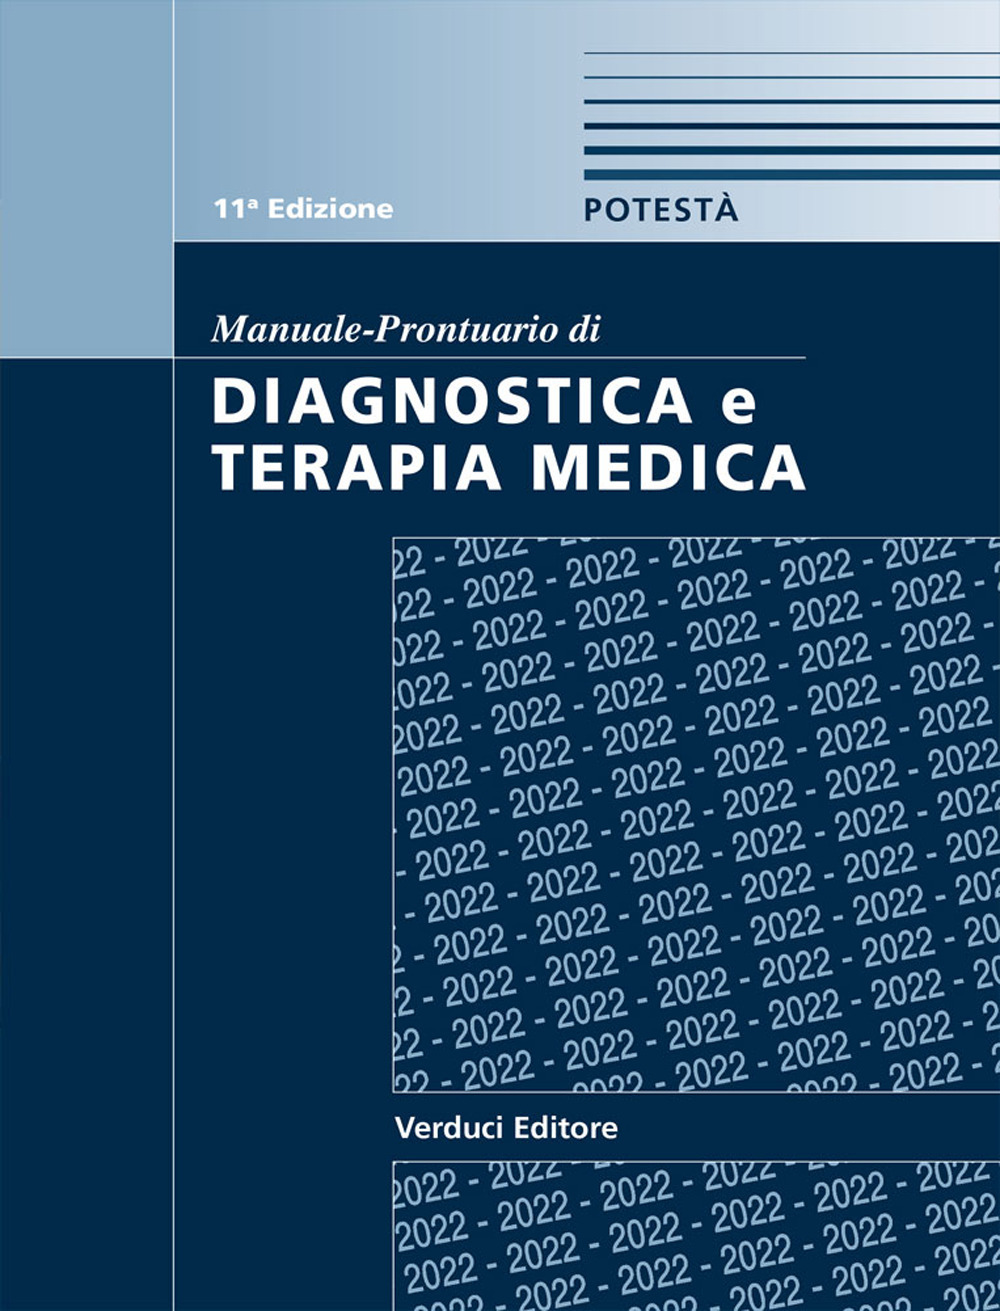 Libri Pasquale Potesta - Manuale-Prontuario Di Diagnostica E Terapia Medica NUOVO SIGILLATO, EDIZIONE DEL 19/01/2022 SUBITO DISPONIBILE